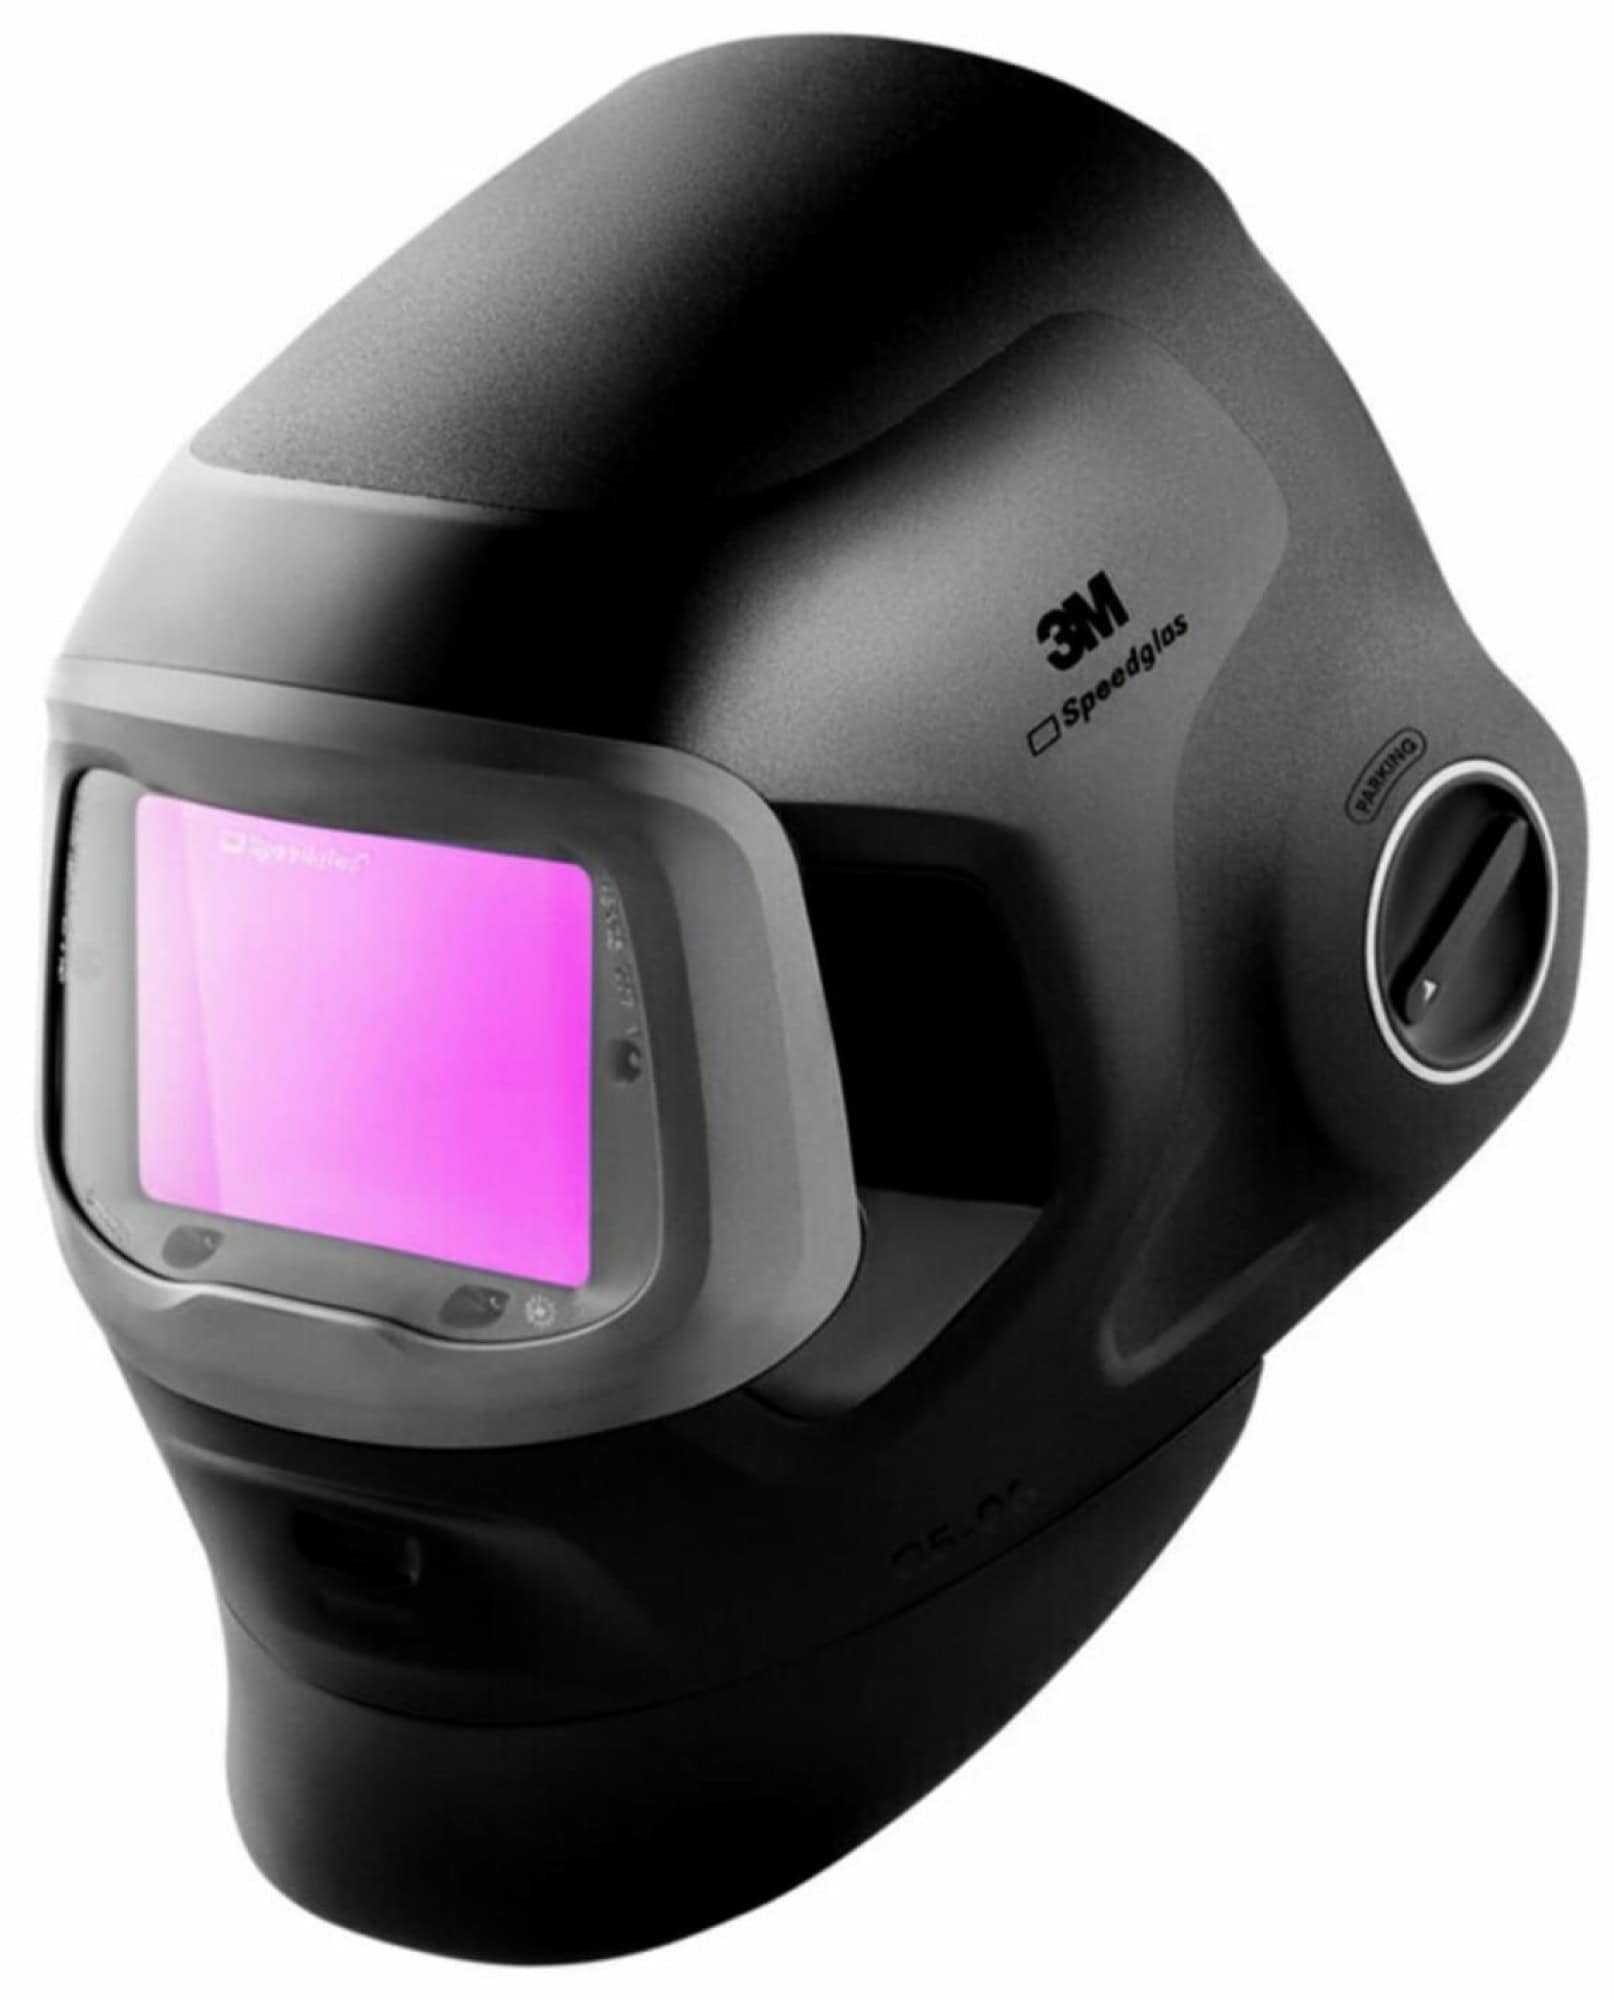 3M™ Speedglas™ Schweißmaske G5-03 Pro mit Schweißfilter G5-01/03VC, 631830, inkl. Kopfband, Für besten Kontrast mit Farboptionen